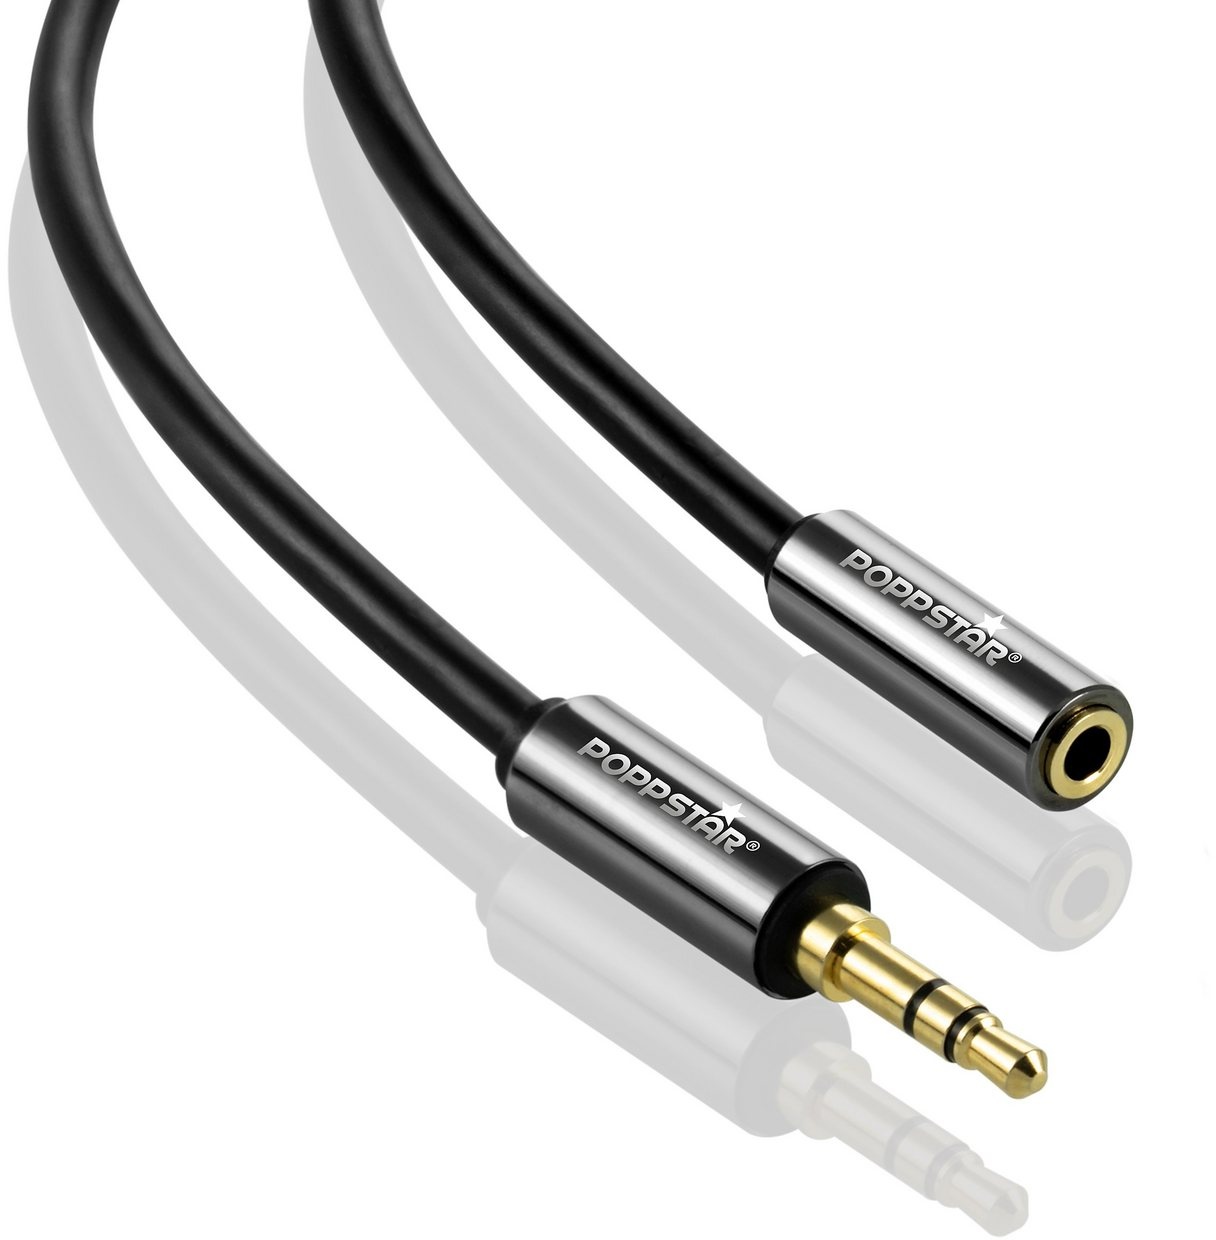 Poppstar Audio Kabel Klinke 3,5mm Klinkenkabel Stecker auf Buchse Audio-Kabel, 3,5-mm-Klinke, 3,5-mm-Klinke (50 cm), Verlängerungskabel für Kopfhörer Smartphone MP3-Player Kfz Autoradio